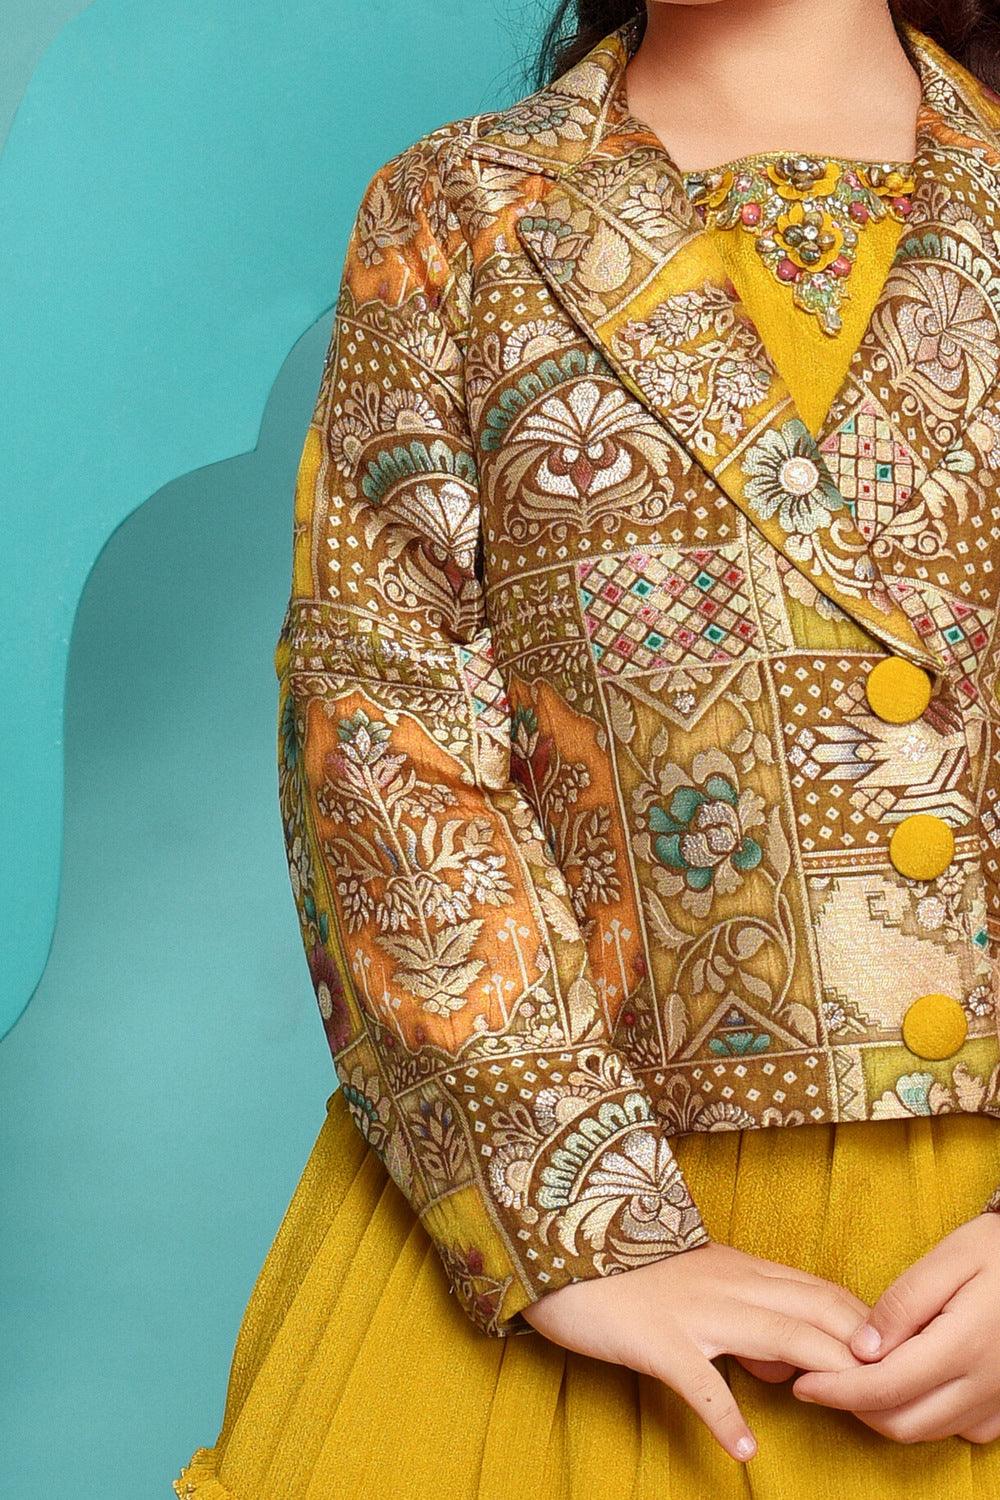 Yellow Stone, Beads and Zari work Overcoat Styled Lehenga Choli for Girls - Seasons Chennai